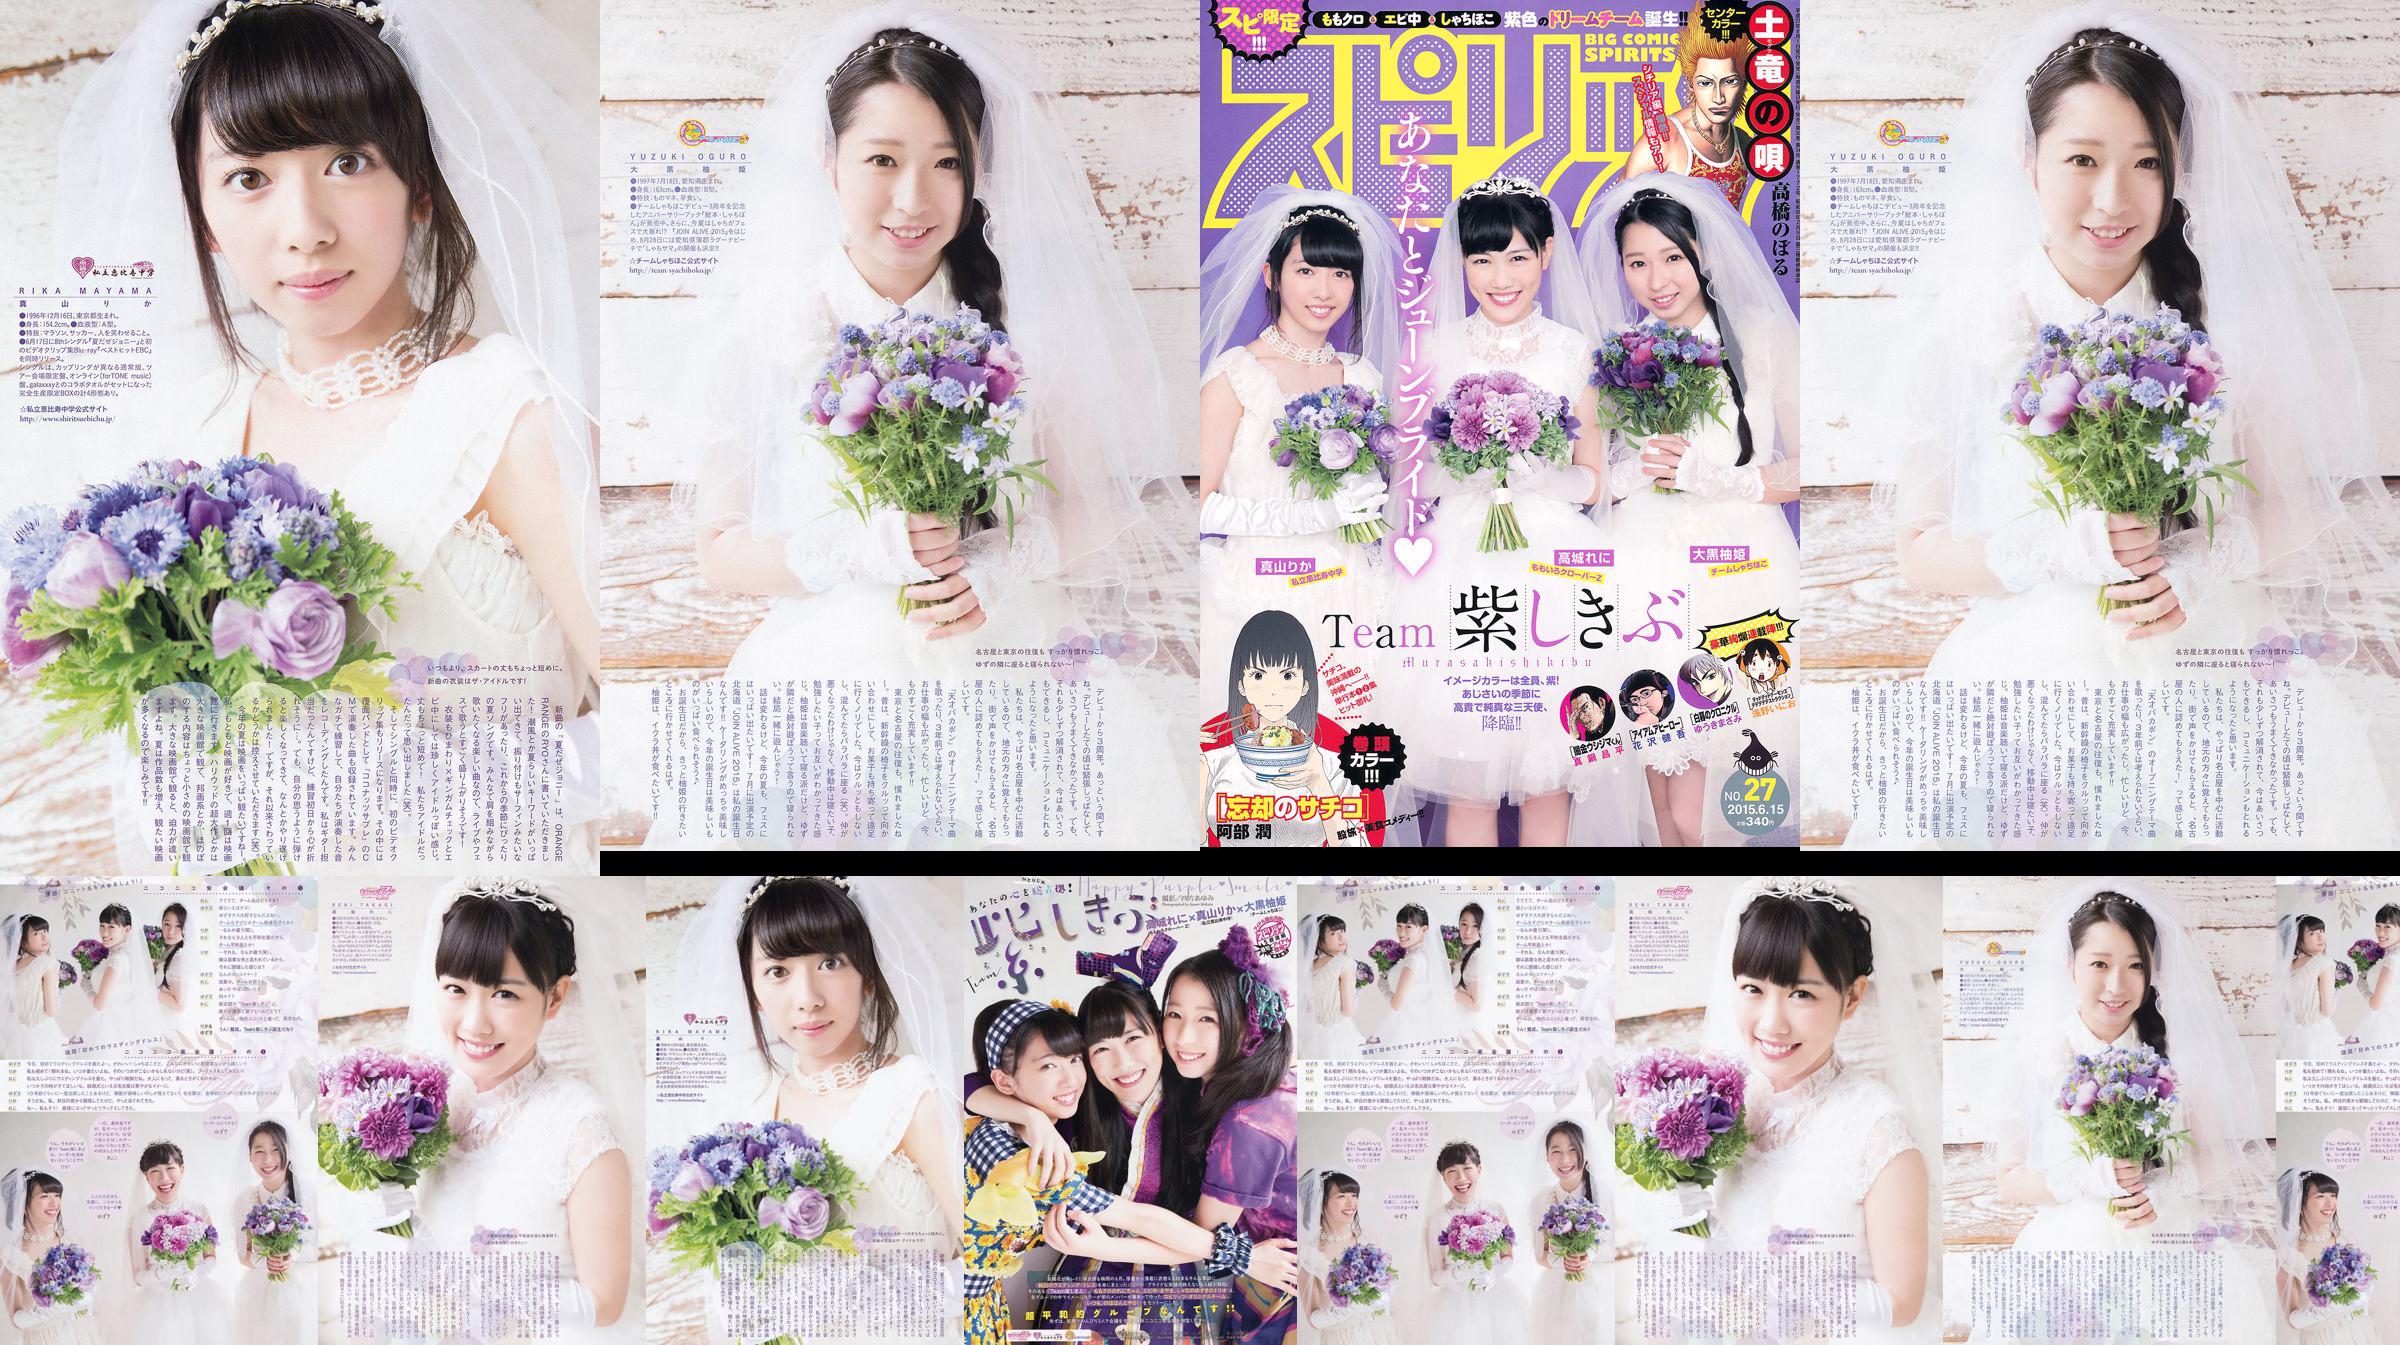 [Weekly Big Comic Spirits] 高城れに 大黒柚姫 真山りか 2015年No.27 写真杂志 No.97bf7c 第1頁